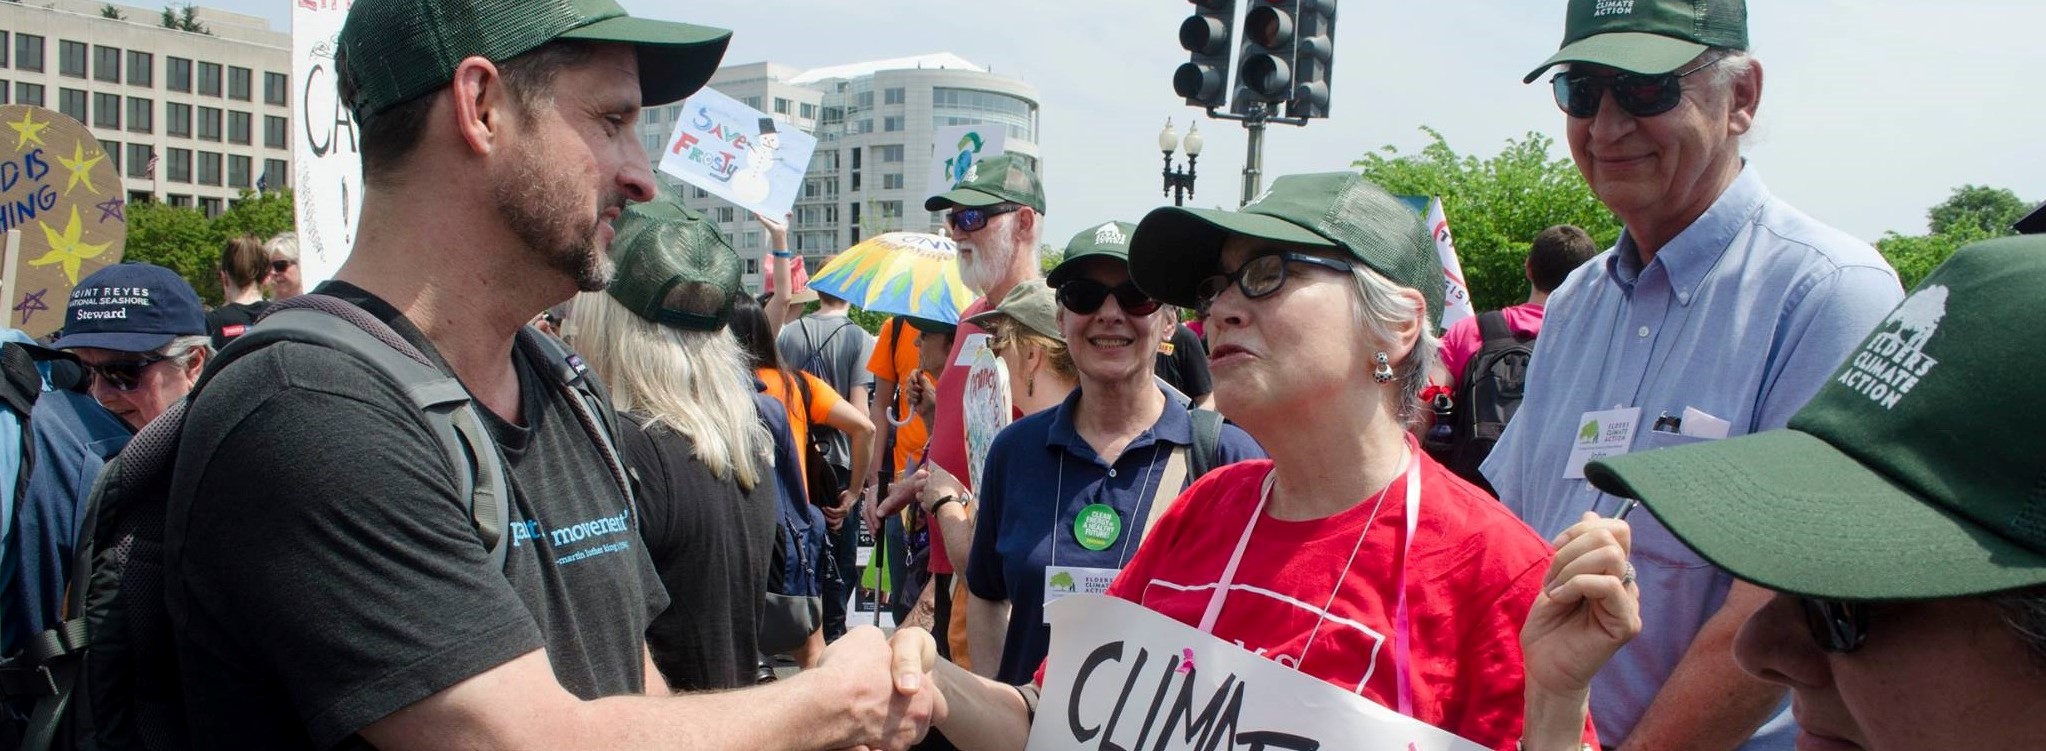 ClimateChange-demonstration-Unsplash-banner